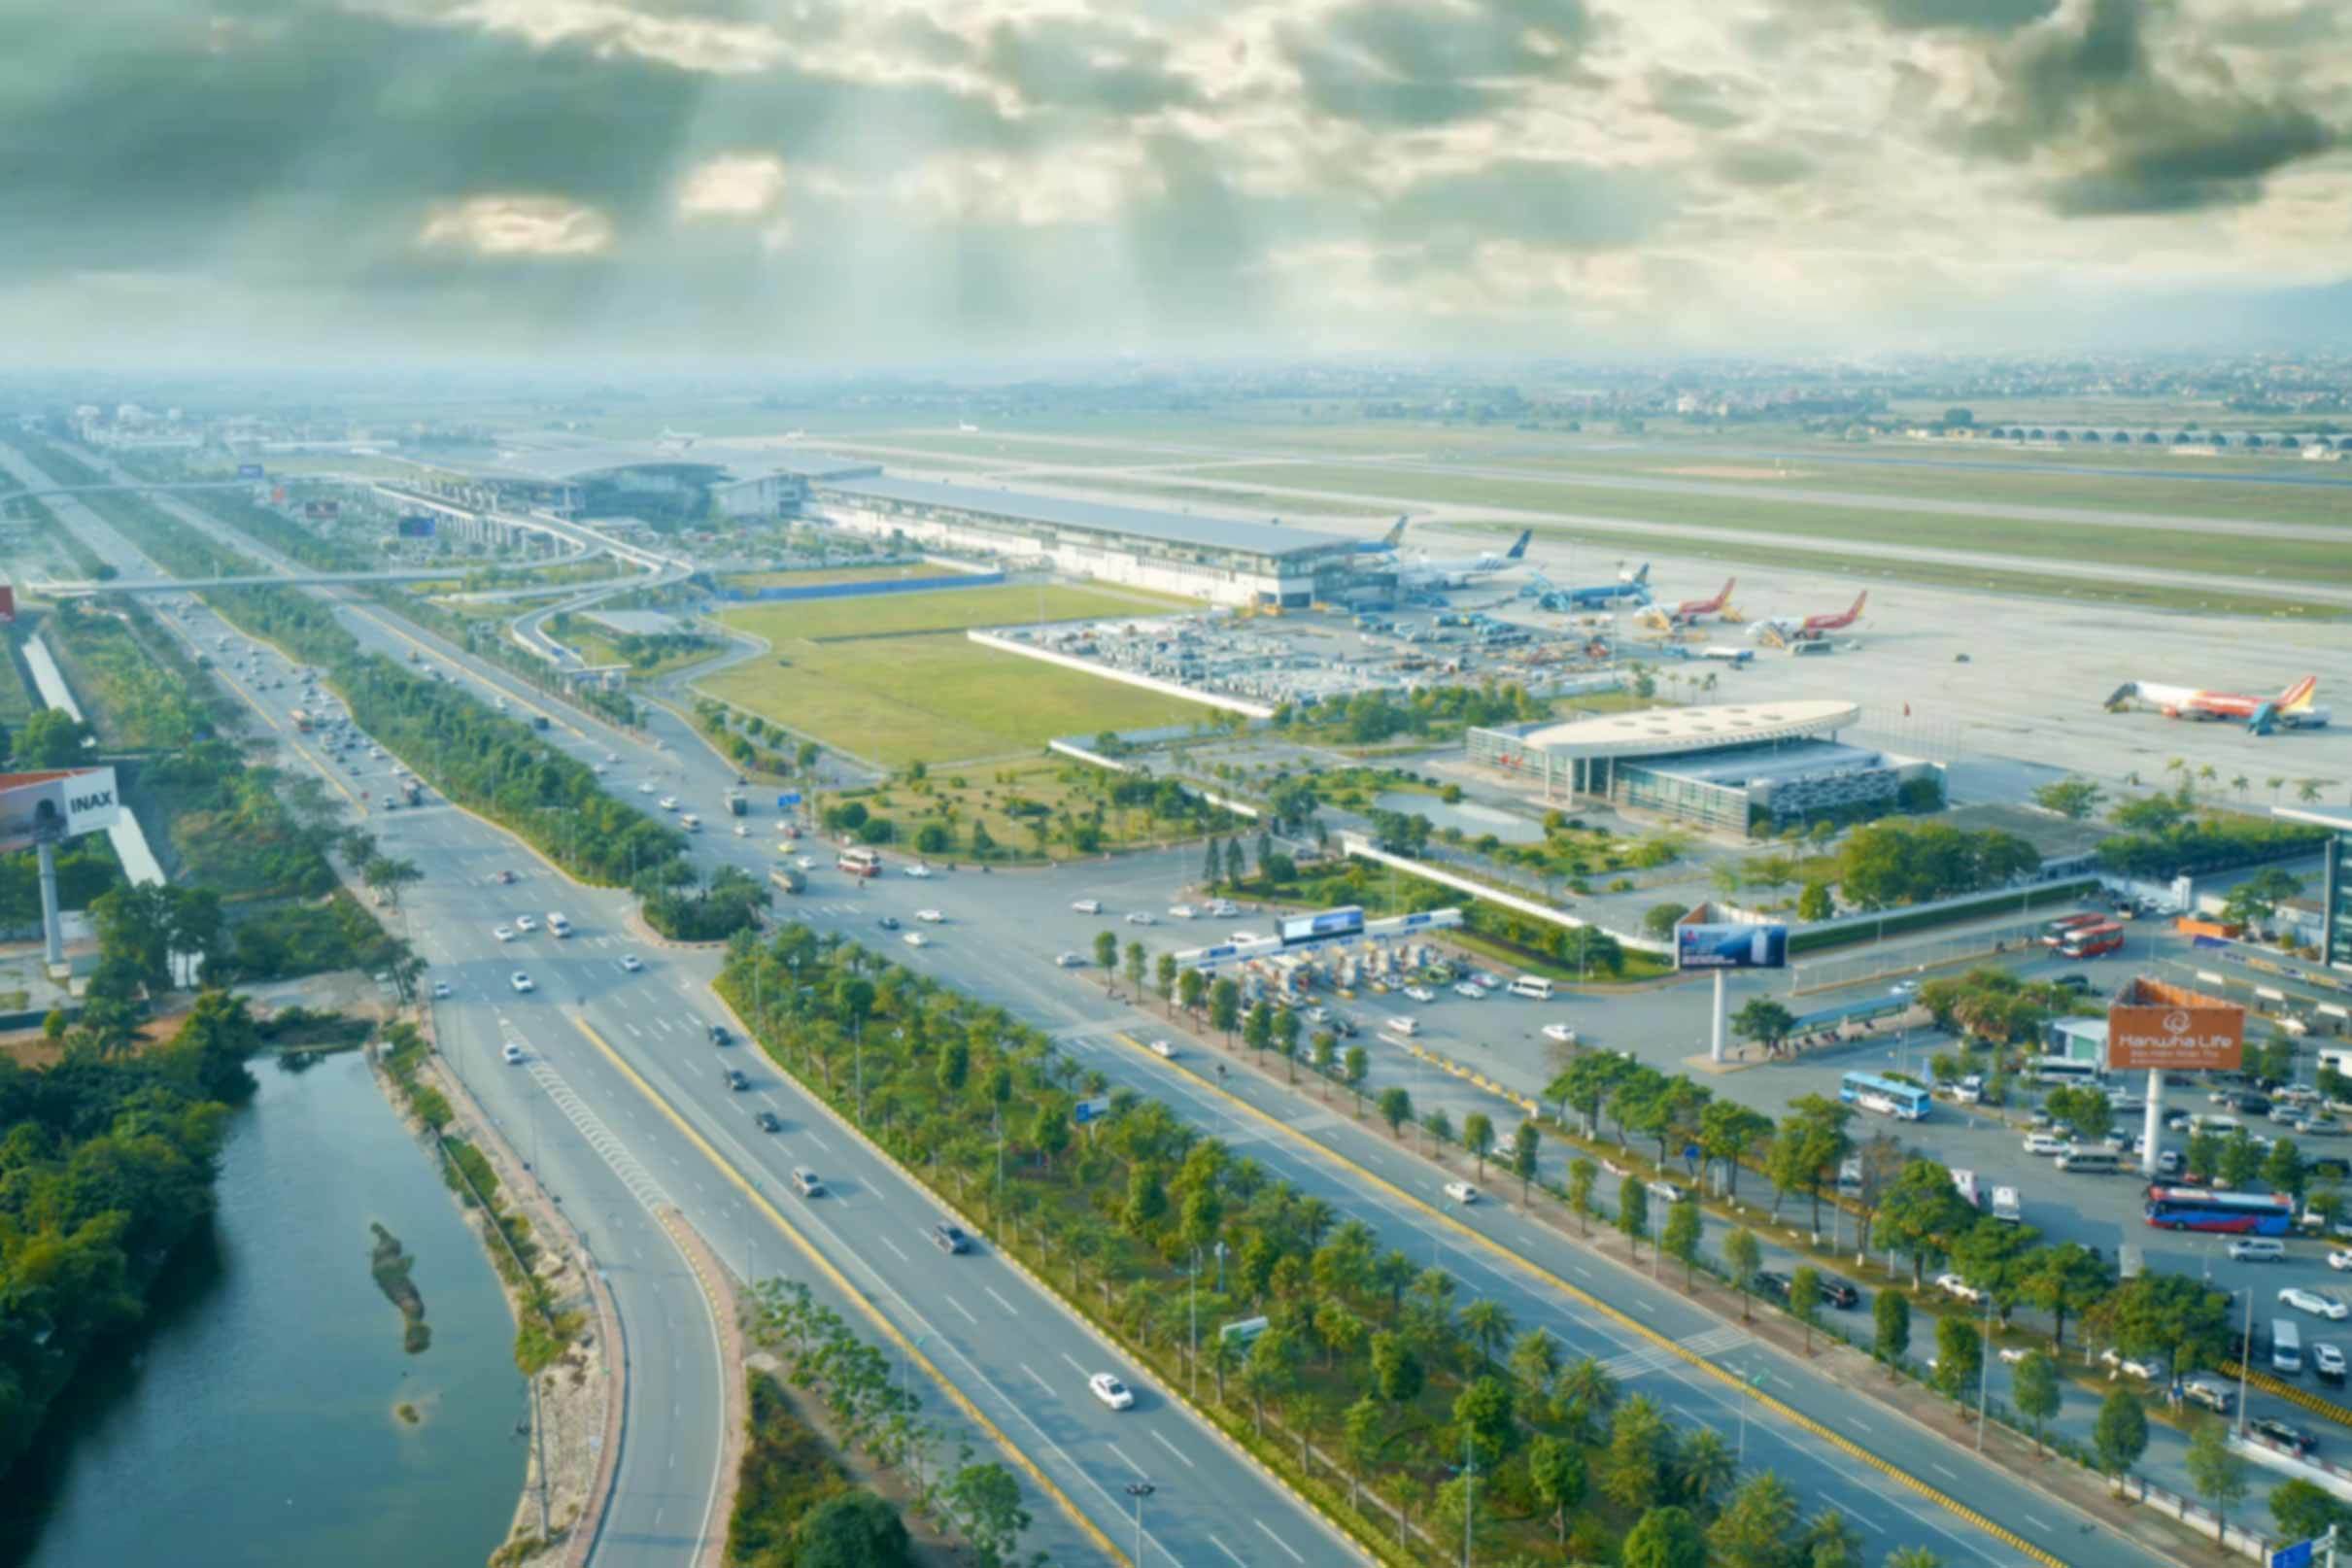 Cảng Hàng không quốc tế Nội Bài thuộc ACV tiếp tục vào Top 100 sân bay tốt nhất thế giới 2020. Đây là lần thứ 5 liên tiếp (2016, 2017, 2018, 2019 và 2020) Nội Bài có mặt trong “Top 100 sân bay tốt nhất thế giới”.